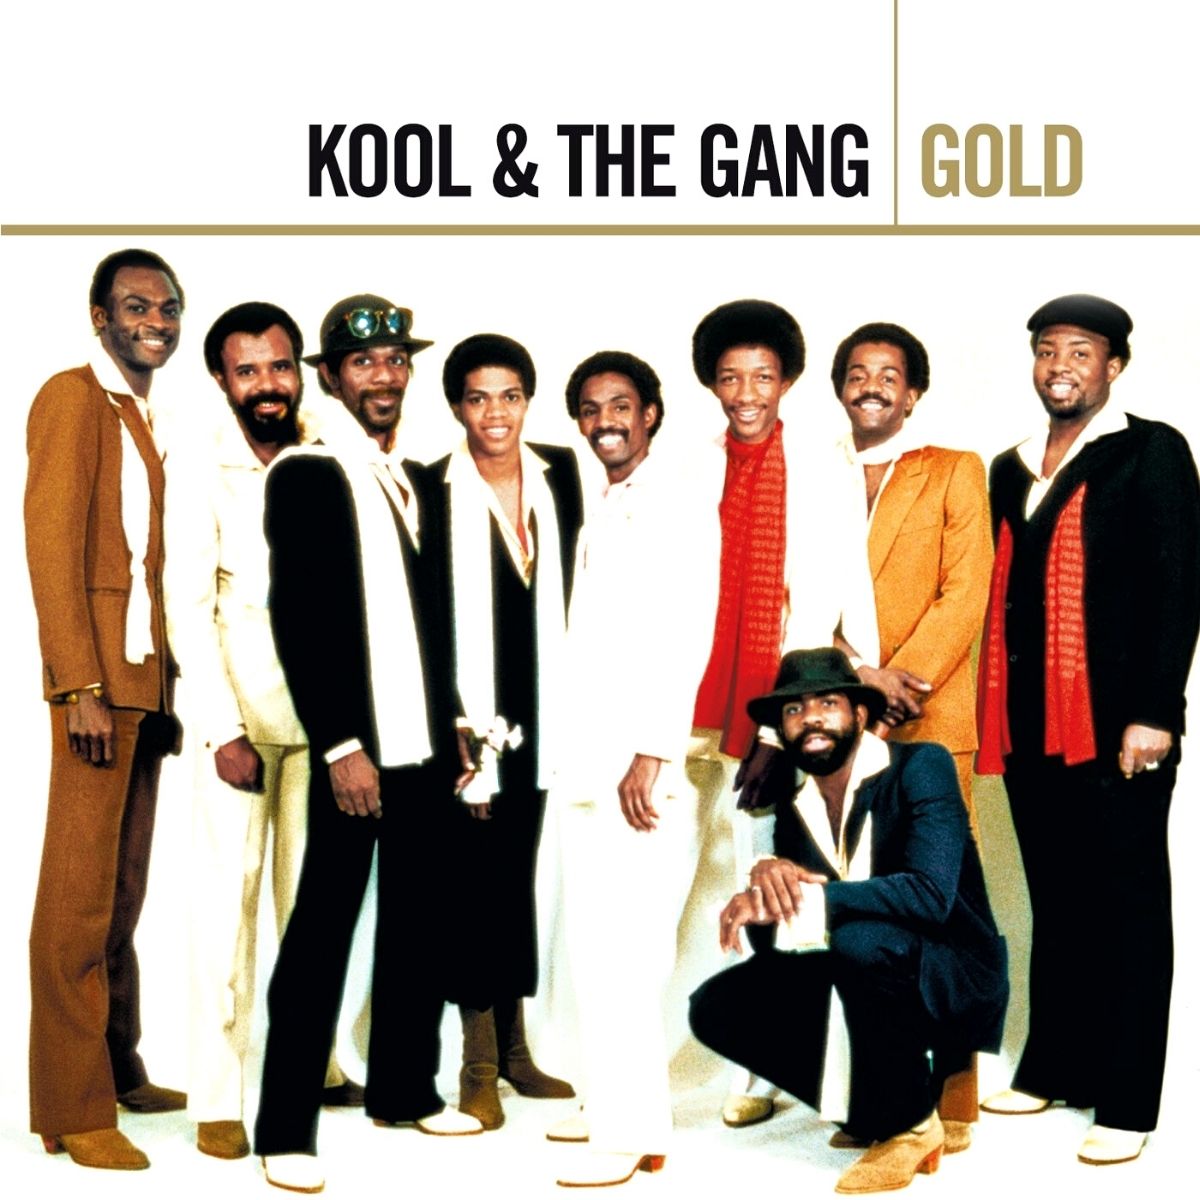 Kool & The Gang sur la couverture de leur album